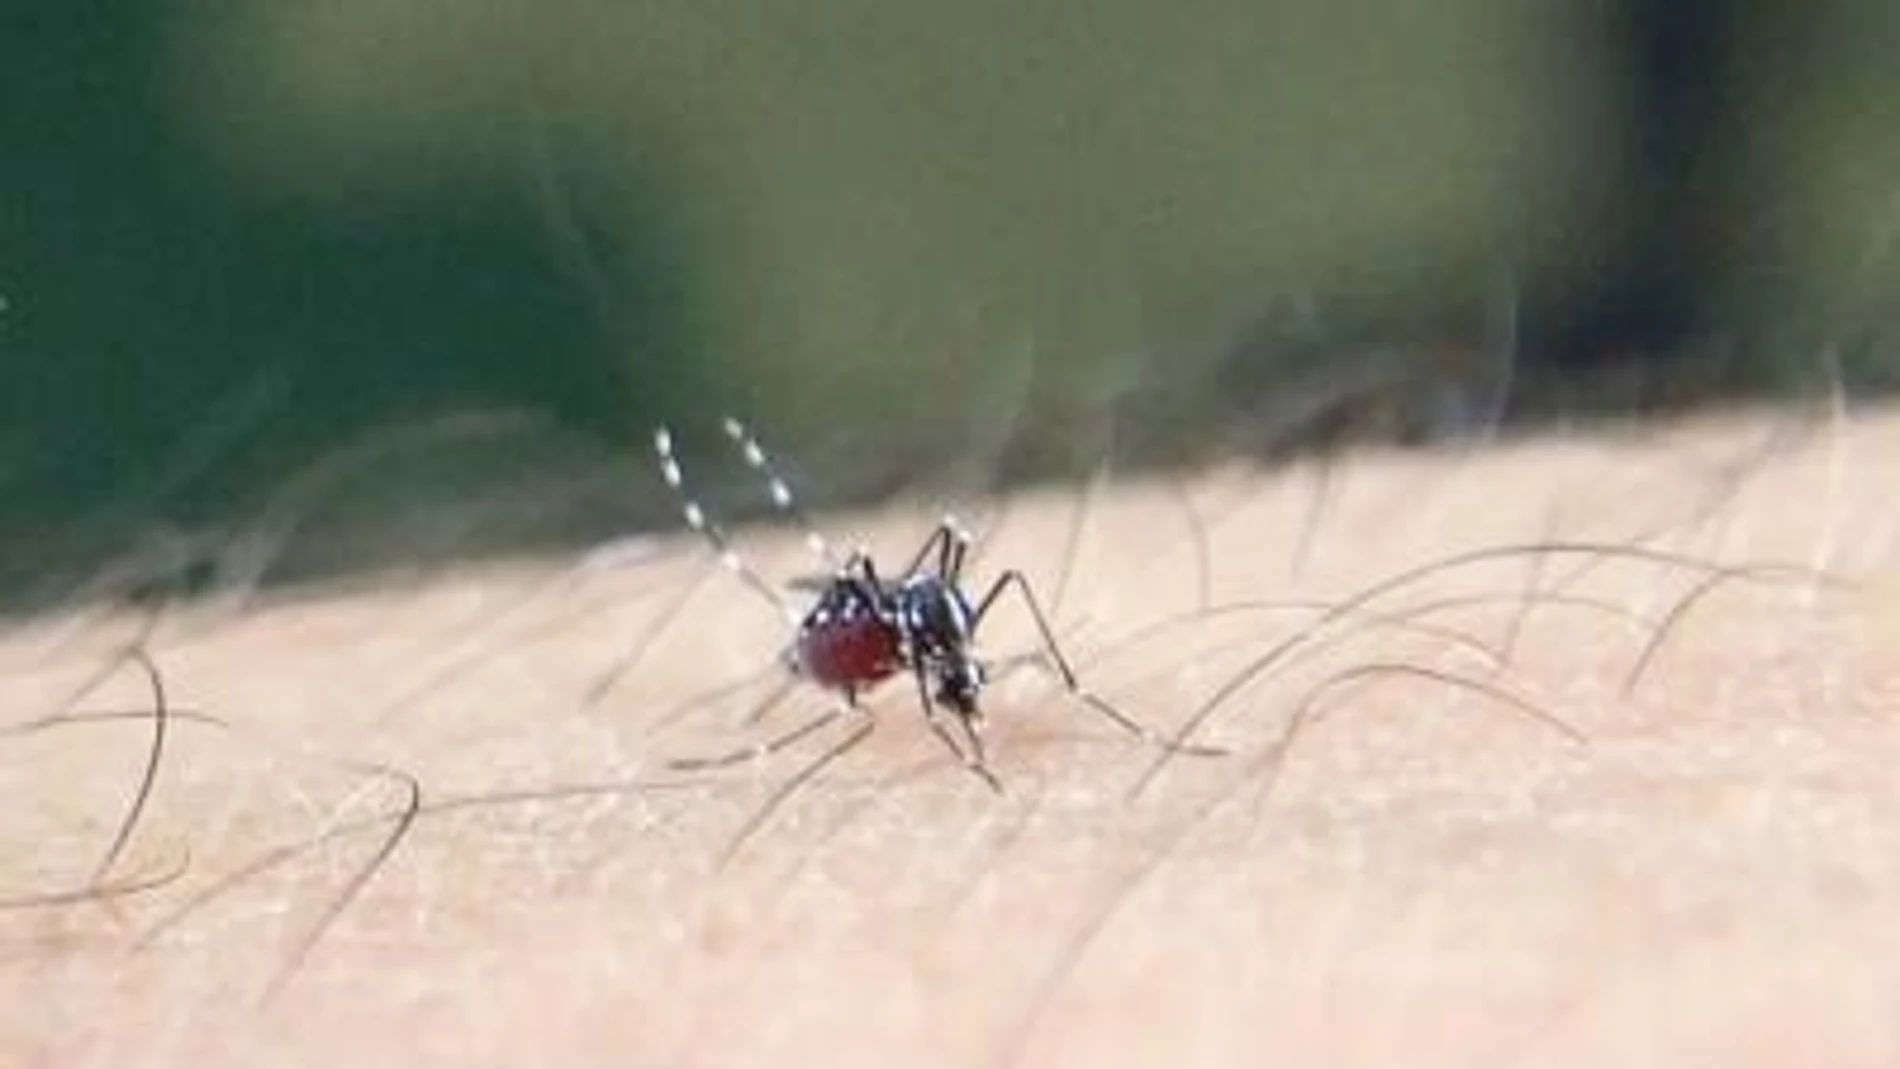 Mosquito tigre asiático (Aedes albopictus) congestionado de sangre tomando su sangre en un brazo humano.